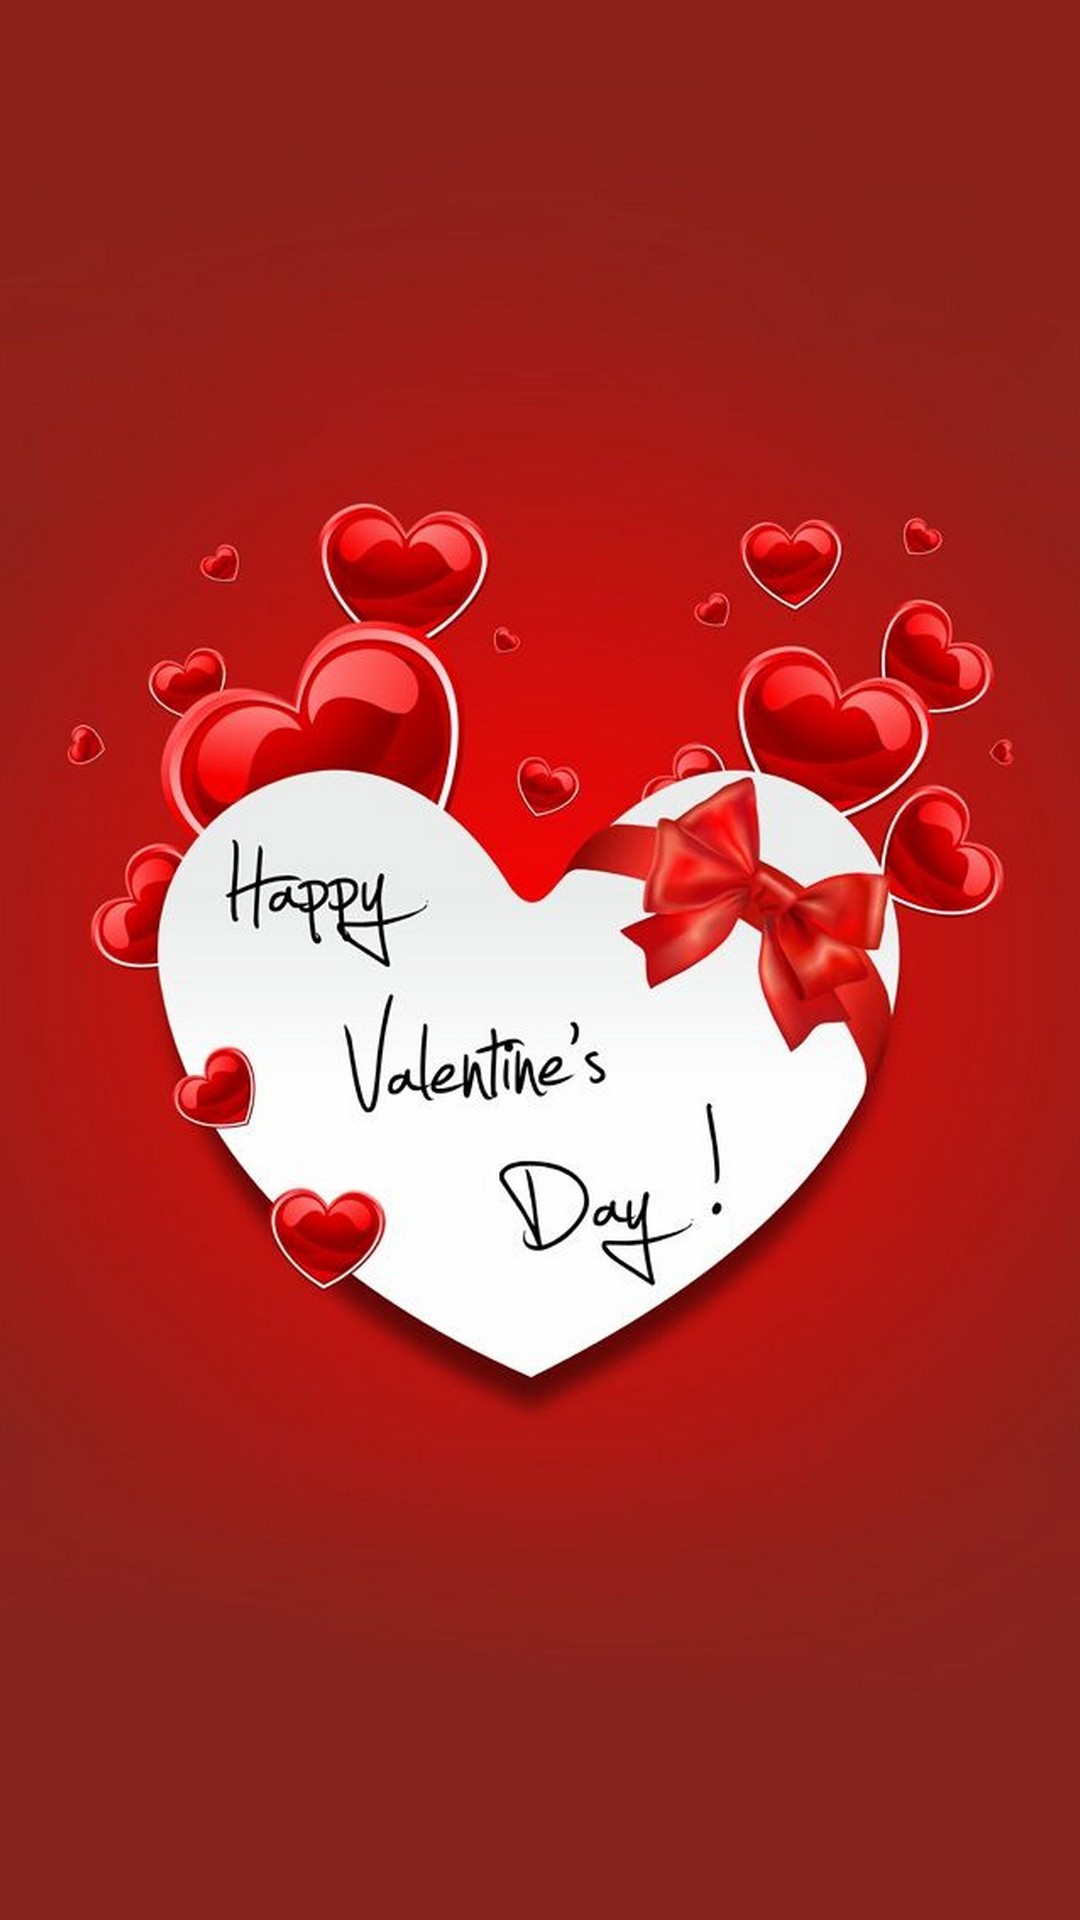 행복한 벽지,심장,사랑,빨간,본문,발렌타인 데이